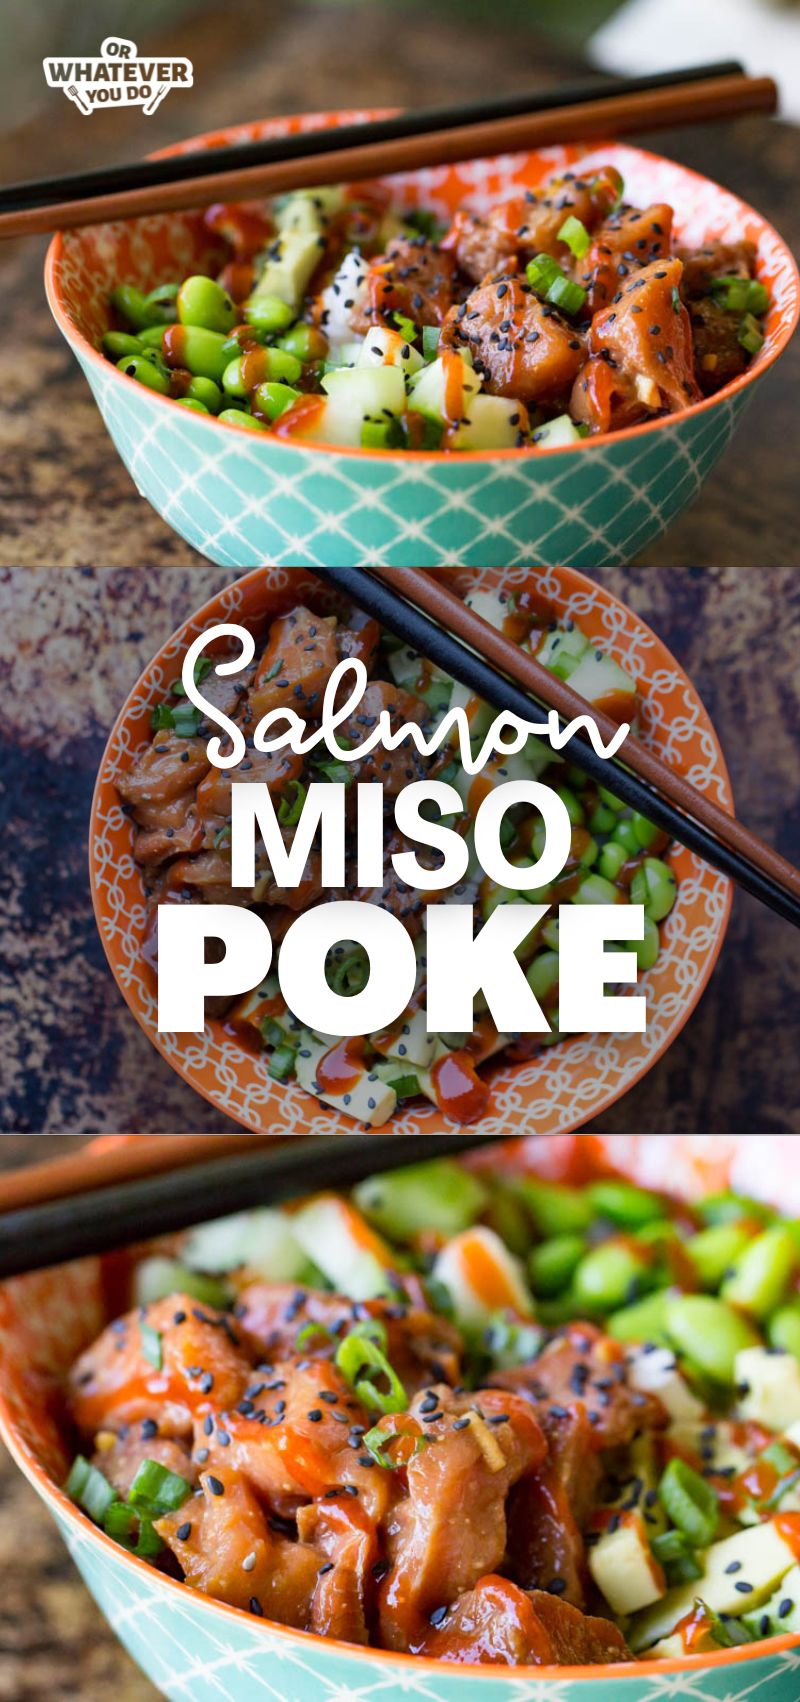 Salmon Miso Poke Bowl